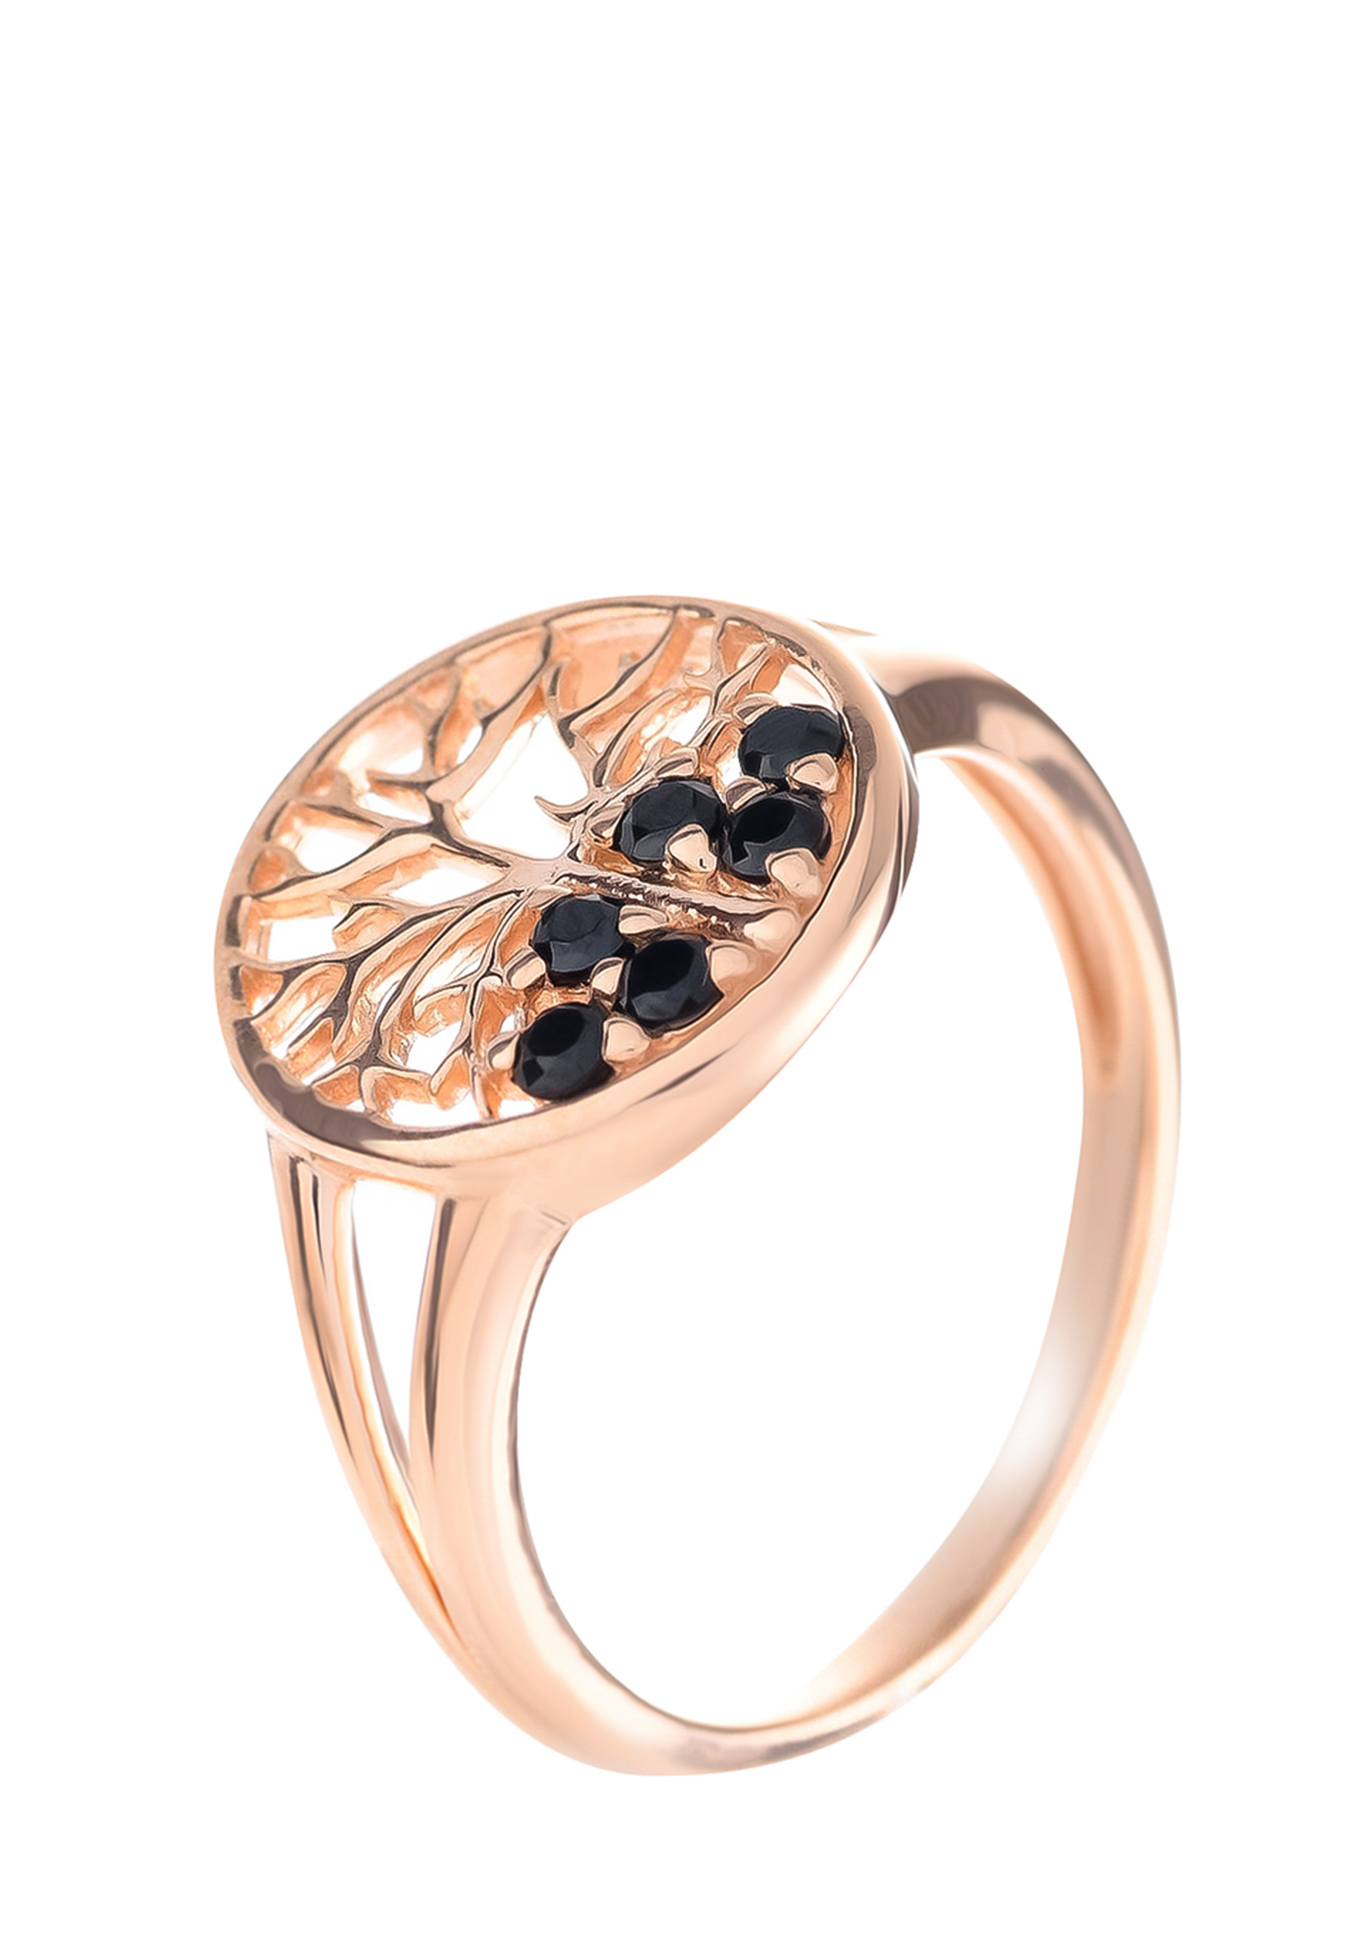 Серебряное кольцо «Дерево удачи» Серебряный Дом, цвет родий, размер 16 сплит шенк - фото 3